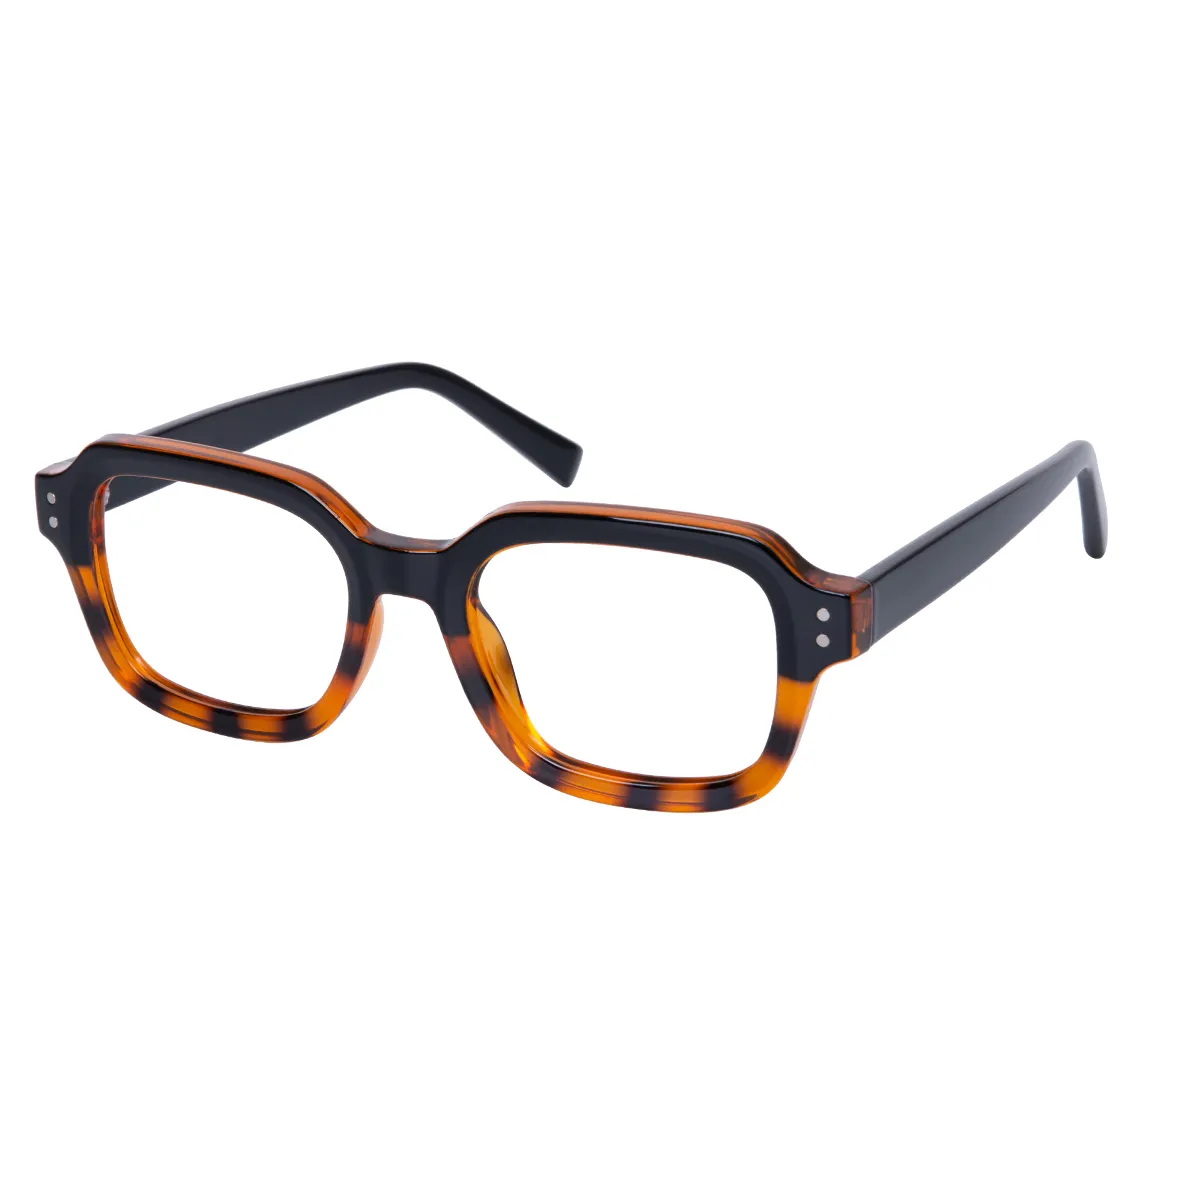 Casey - Square Black-Tortoiseshell Glasses for Men & Women